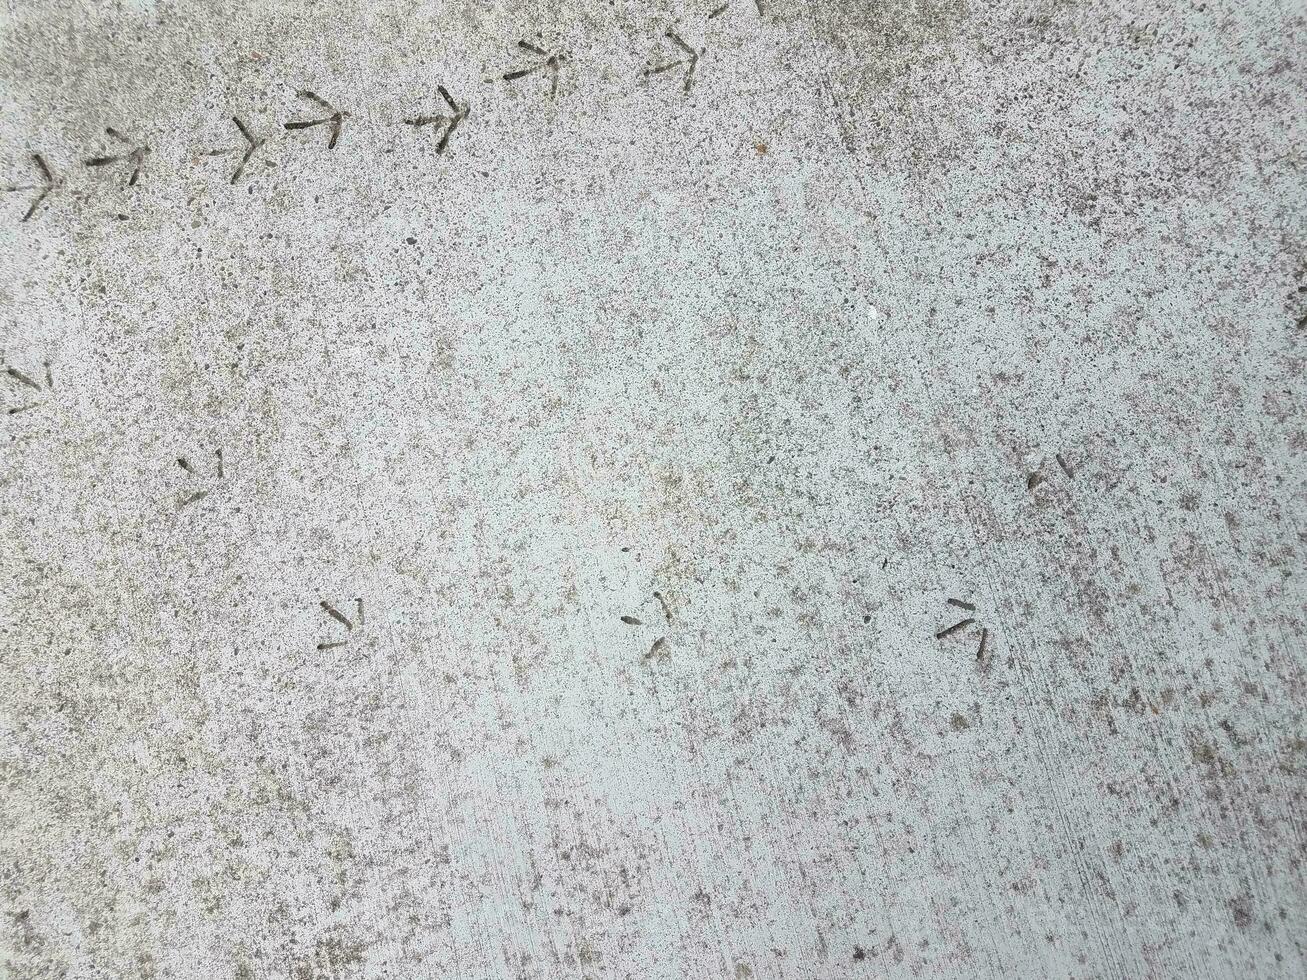 voetafdrukken of sporen van vogels in grijs cement foto